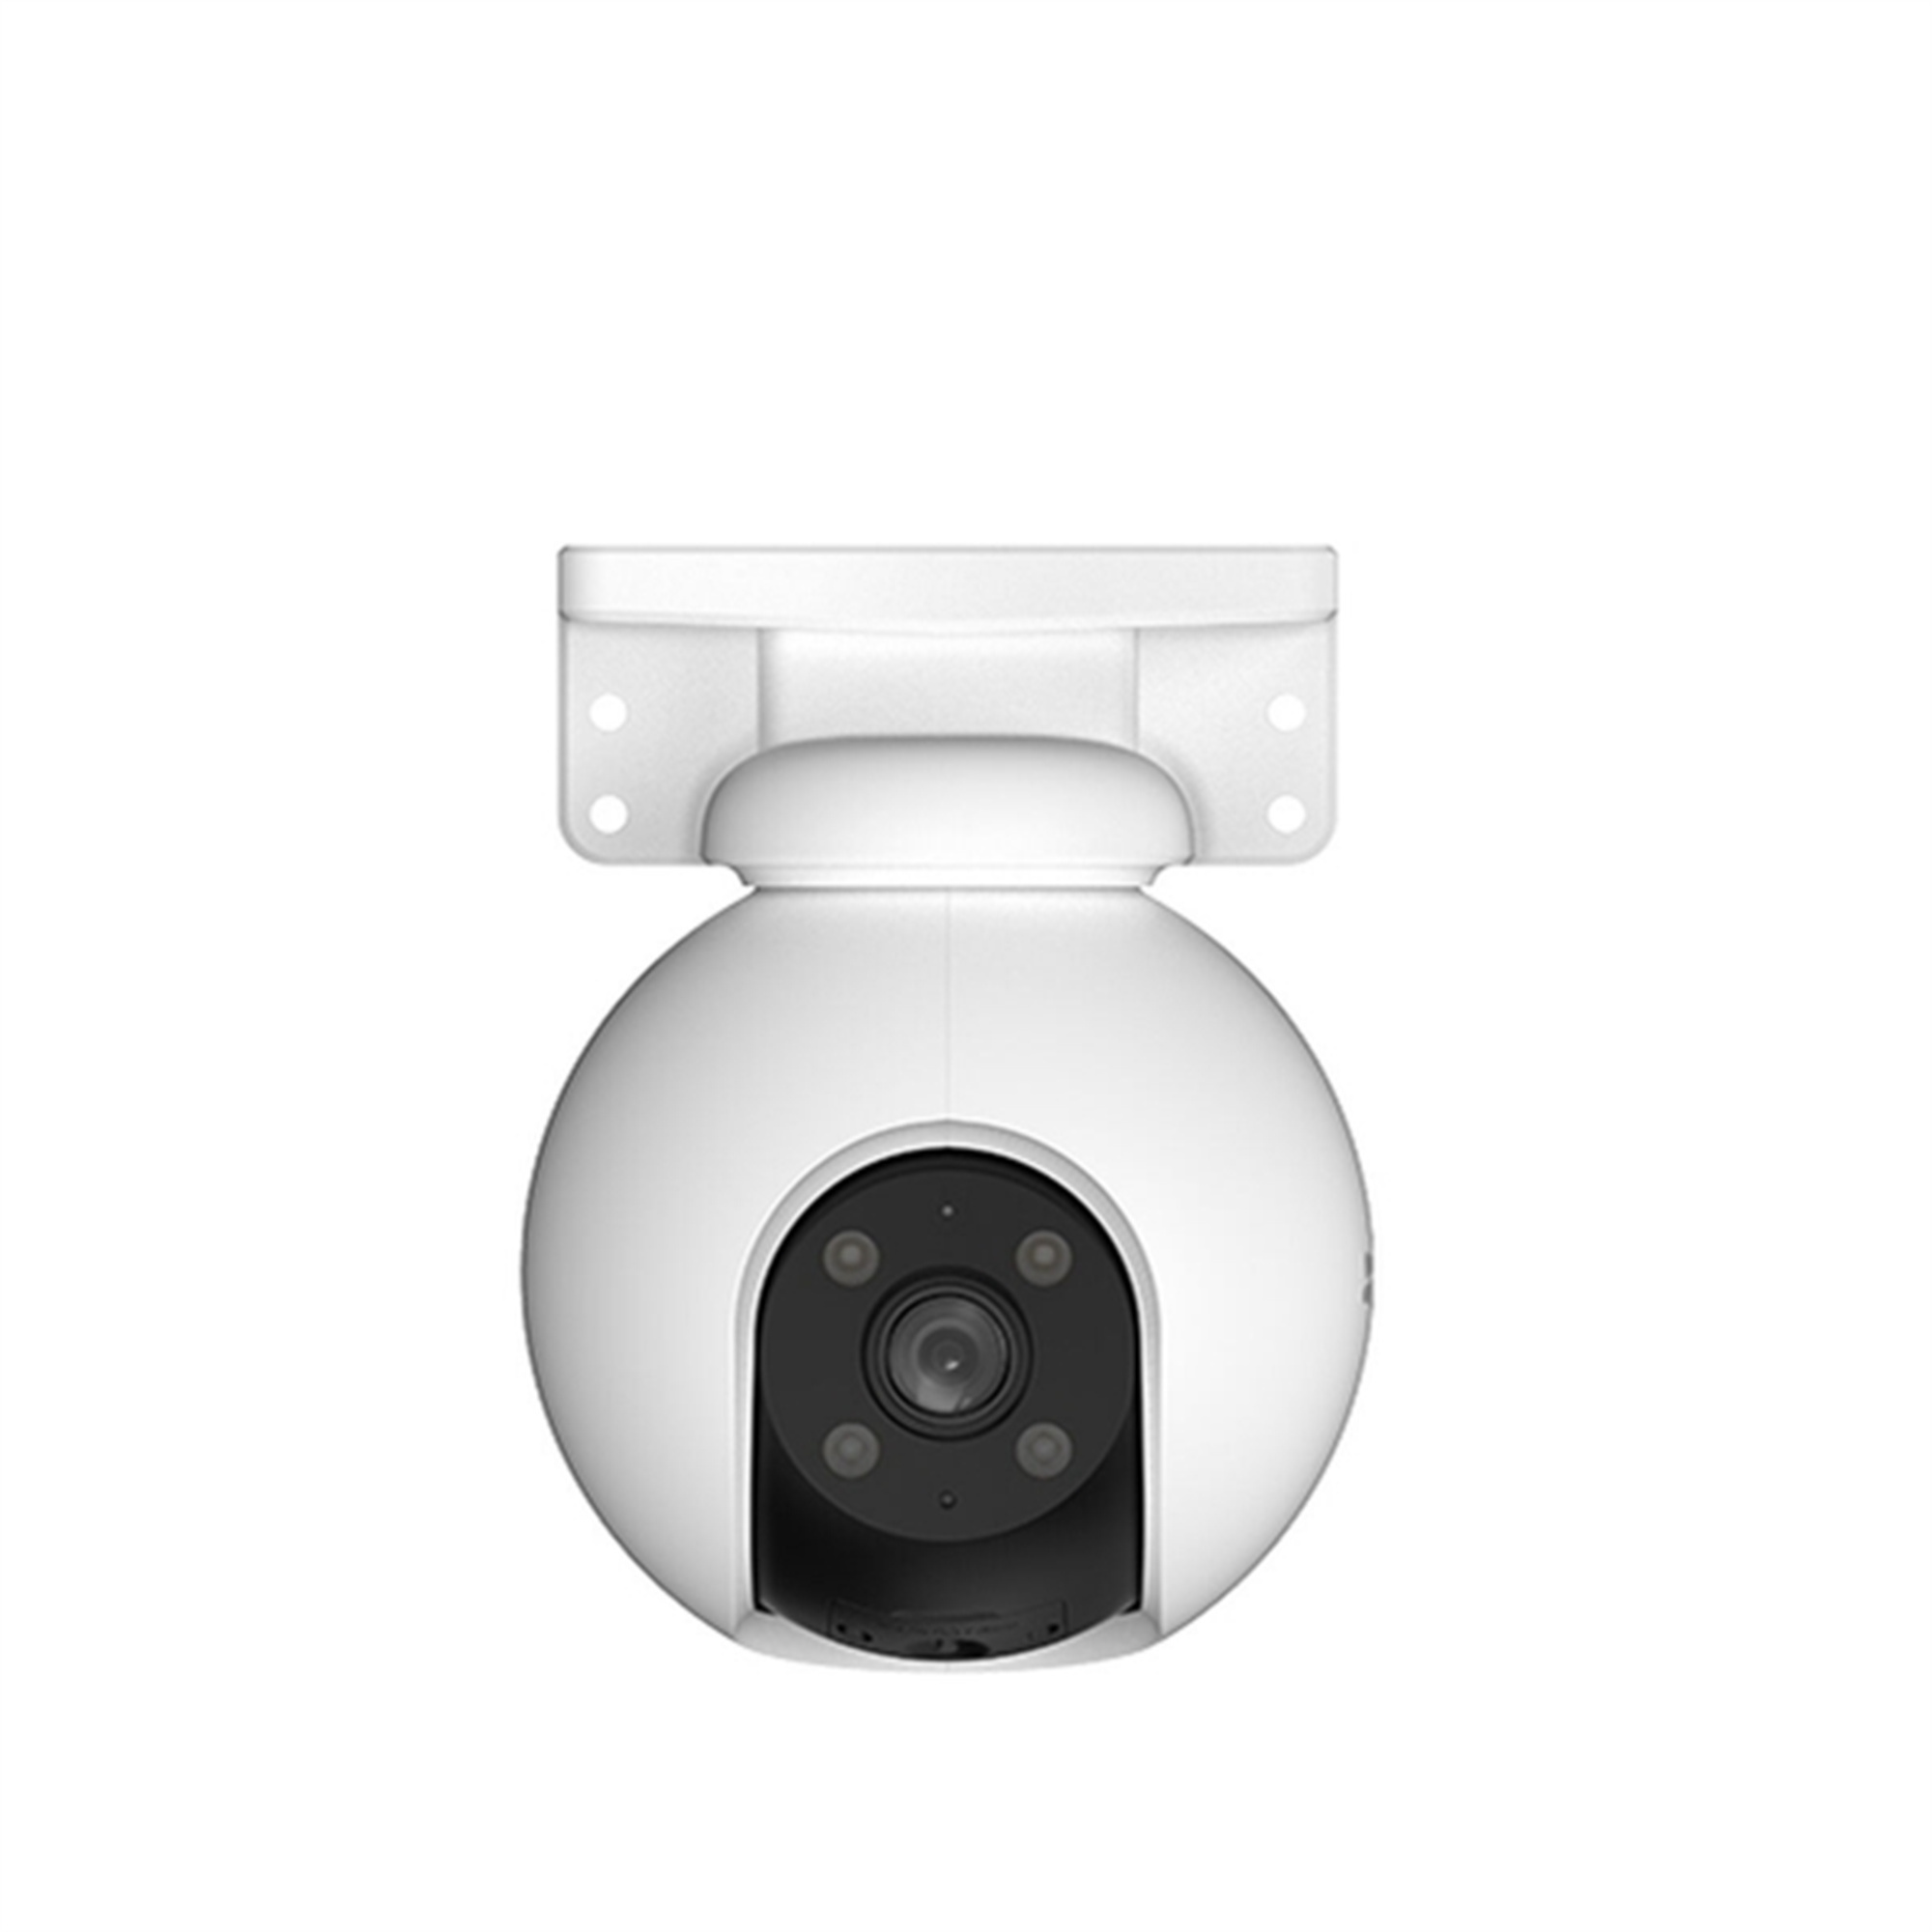 Auflösung Überwachungskamera, x 1296 Pixel Video: DOTMALL 2304 S9137557,